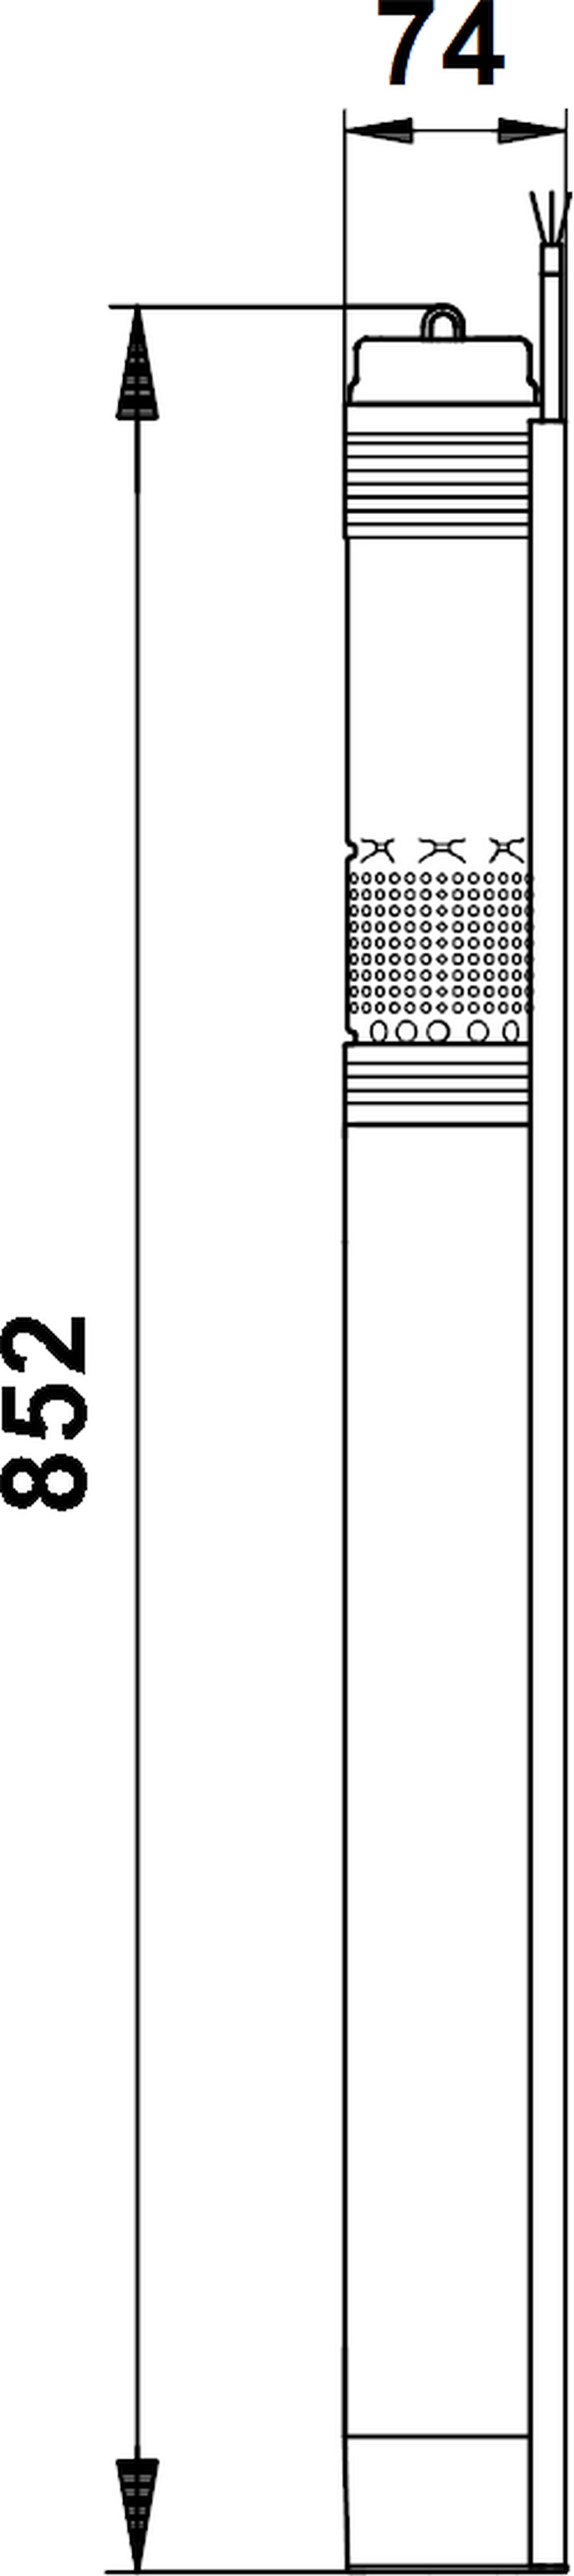 Grundfos SQ 1-110 (96510193) Габаритные размеры